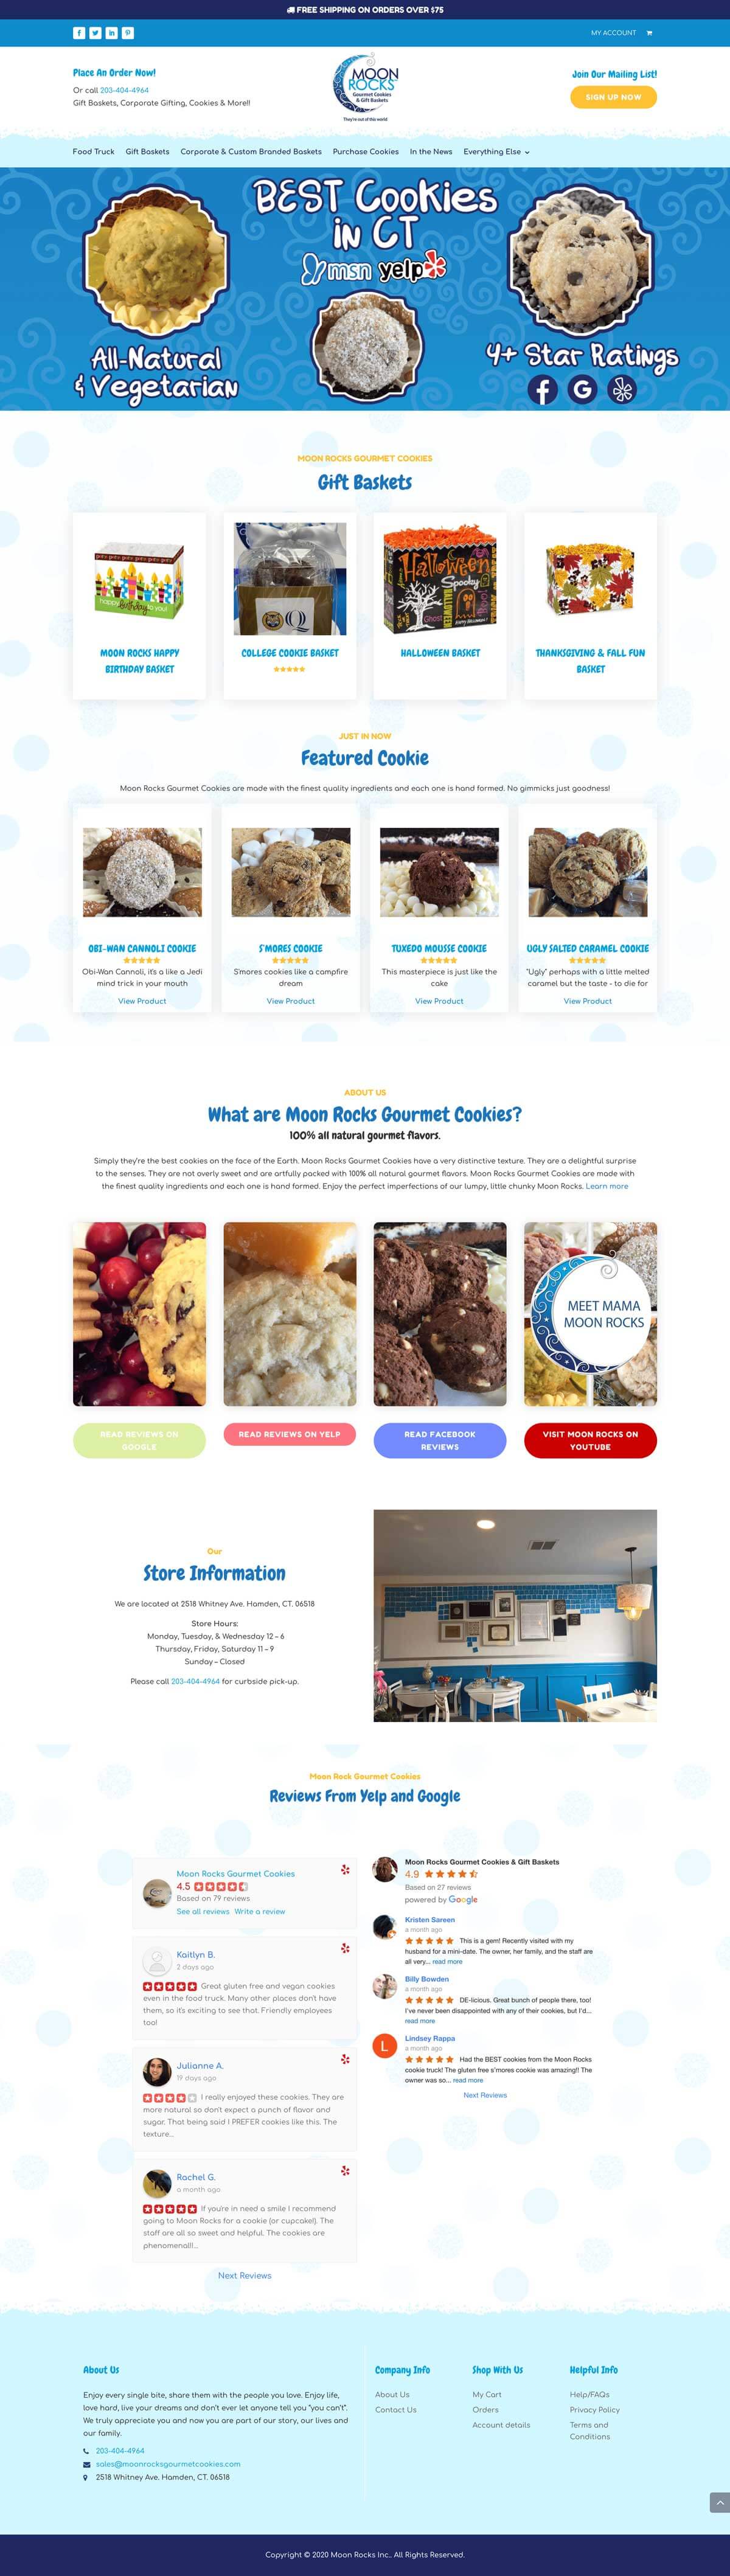 Moon Rocks Gourmet Cookies - Full Website Layout by Ok Omni